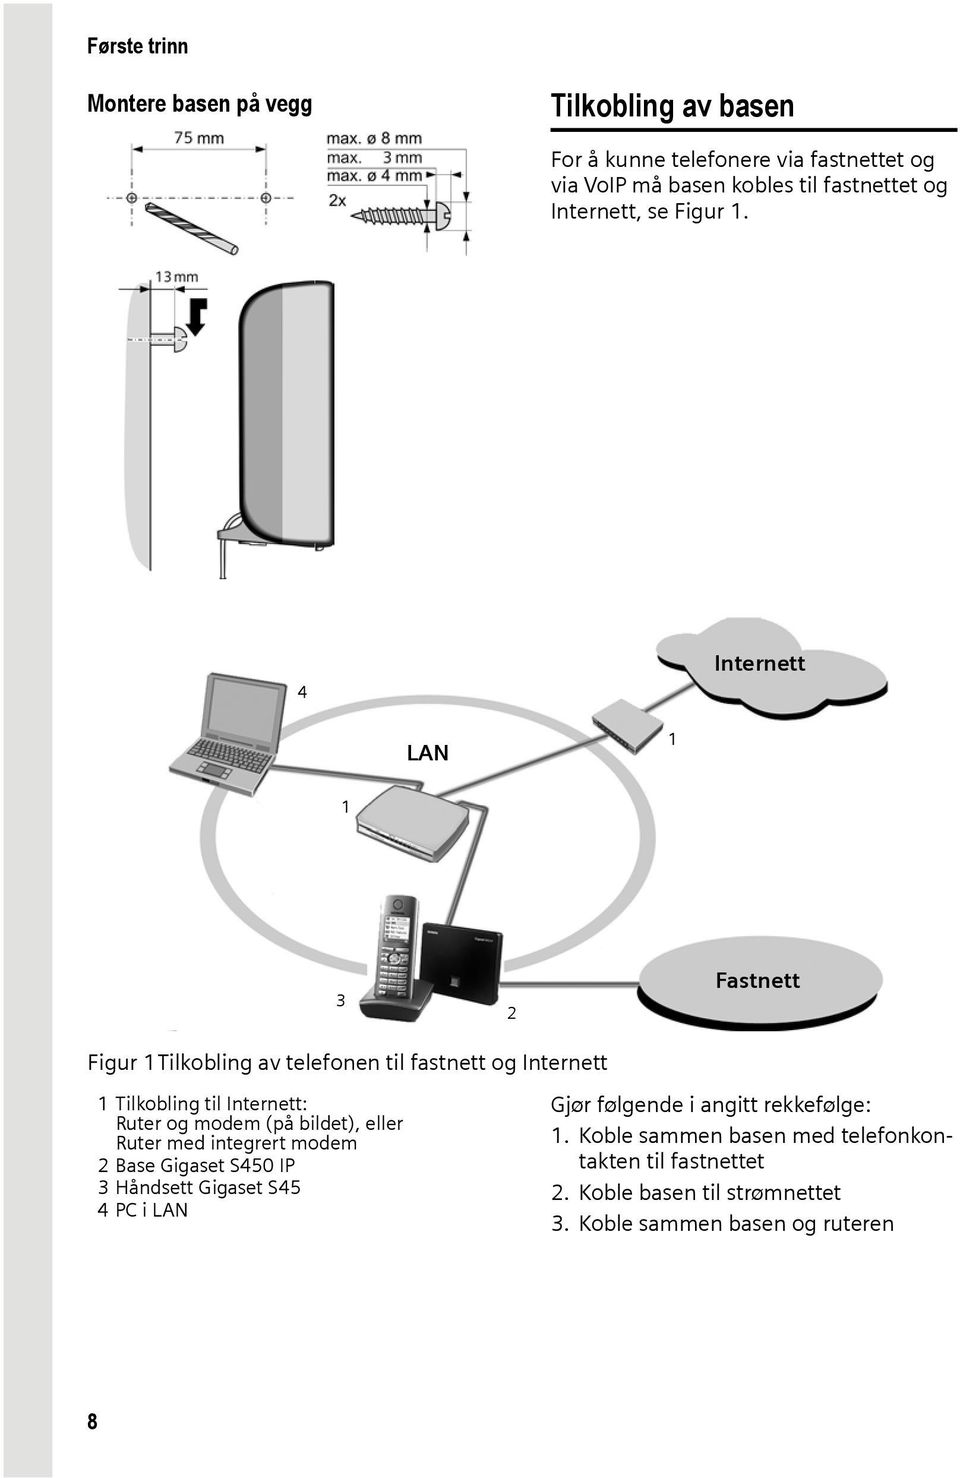 4 Internett LAN 1 1 3 2 Fastnett Figur 1Tilkobling av telefonen til fastnett og Internett 1 Tilkobling til Internett: Ruter og modem (på